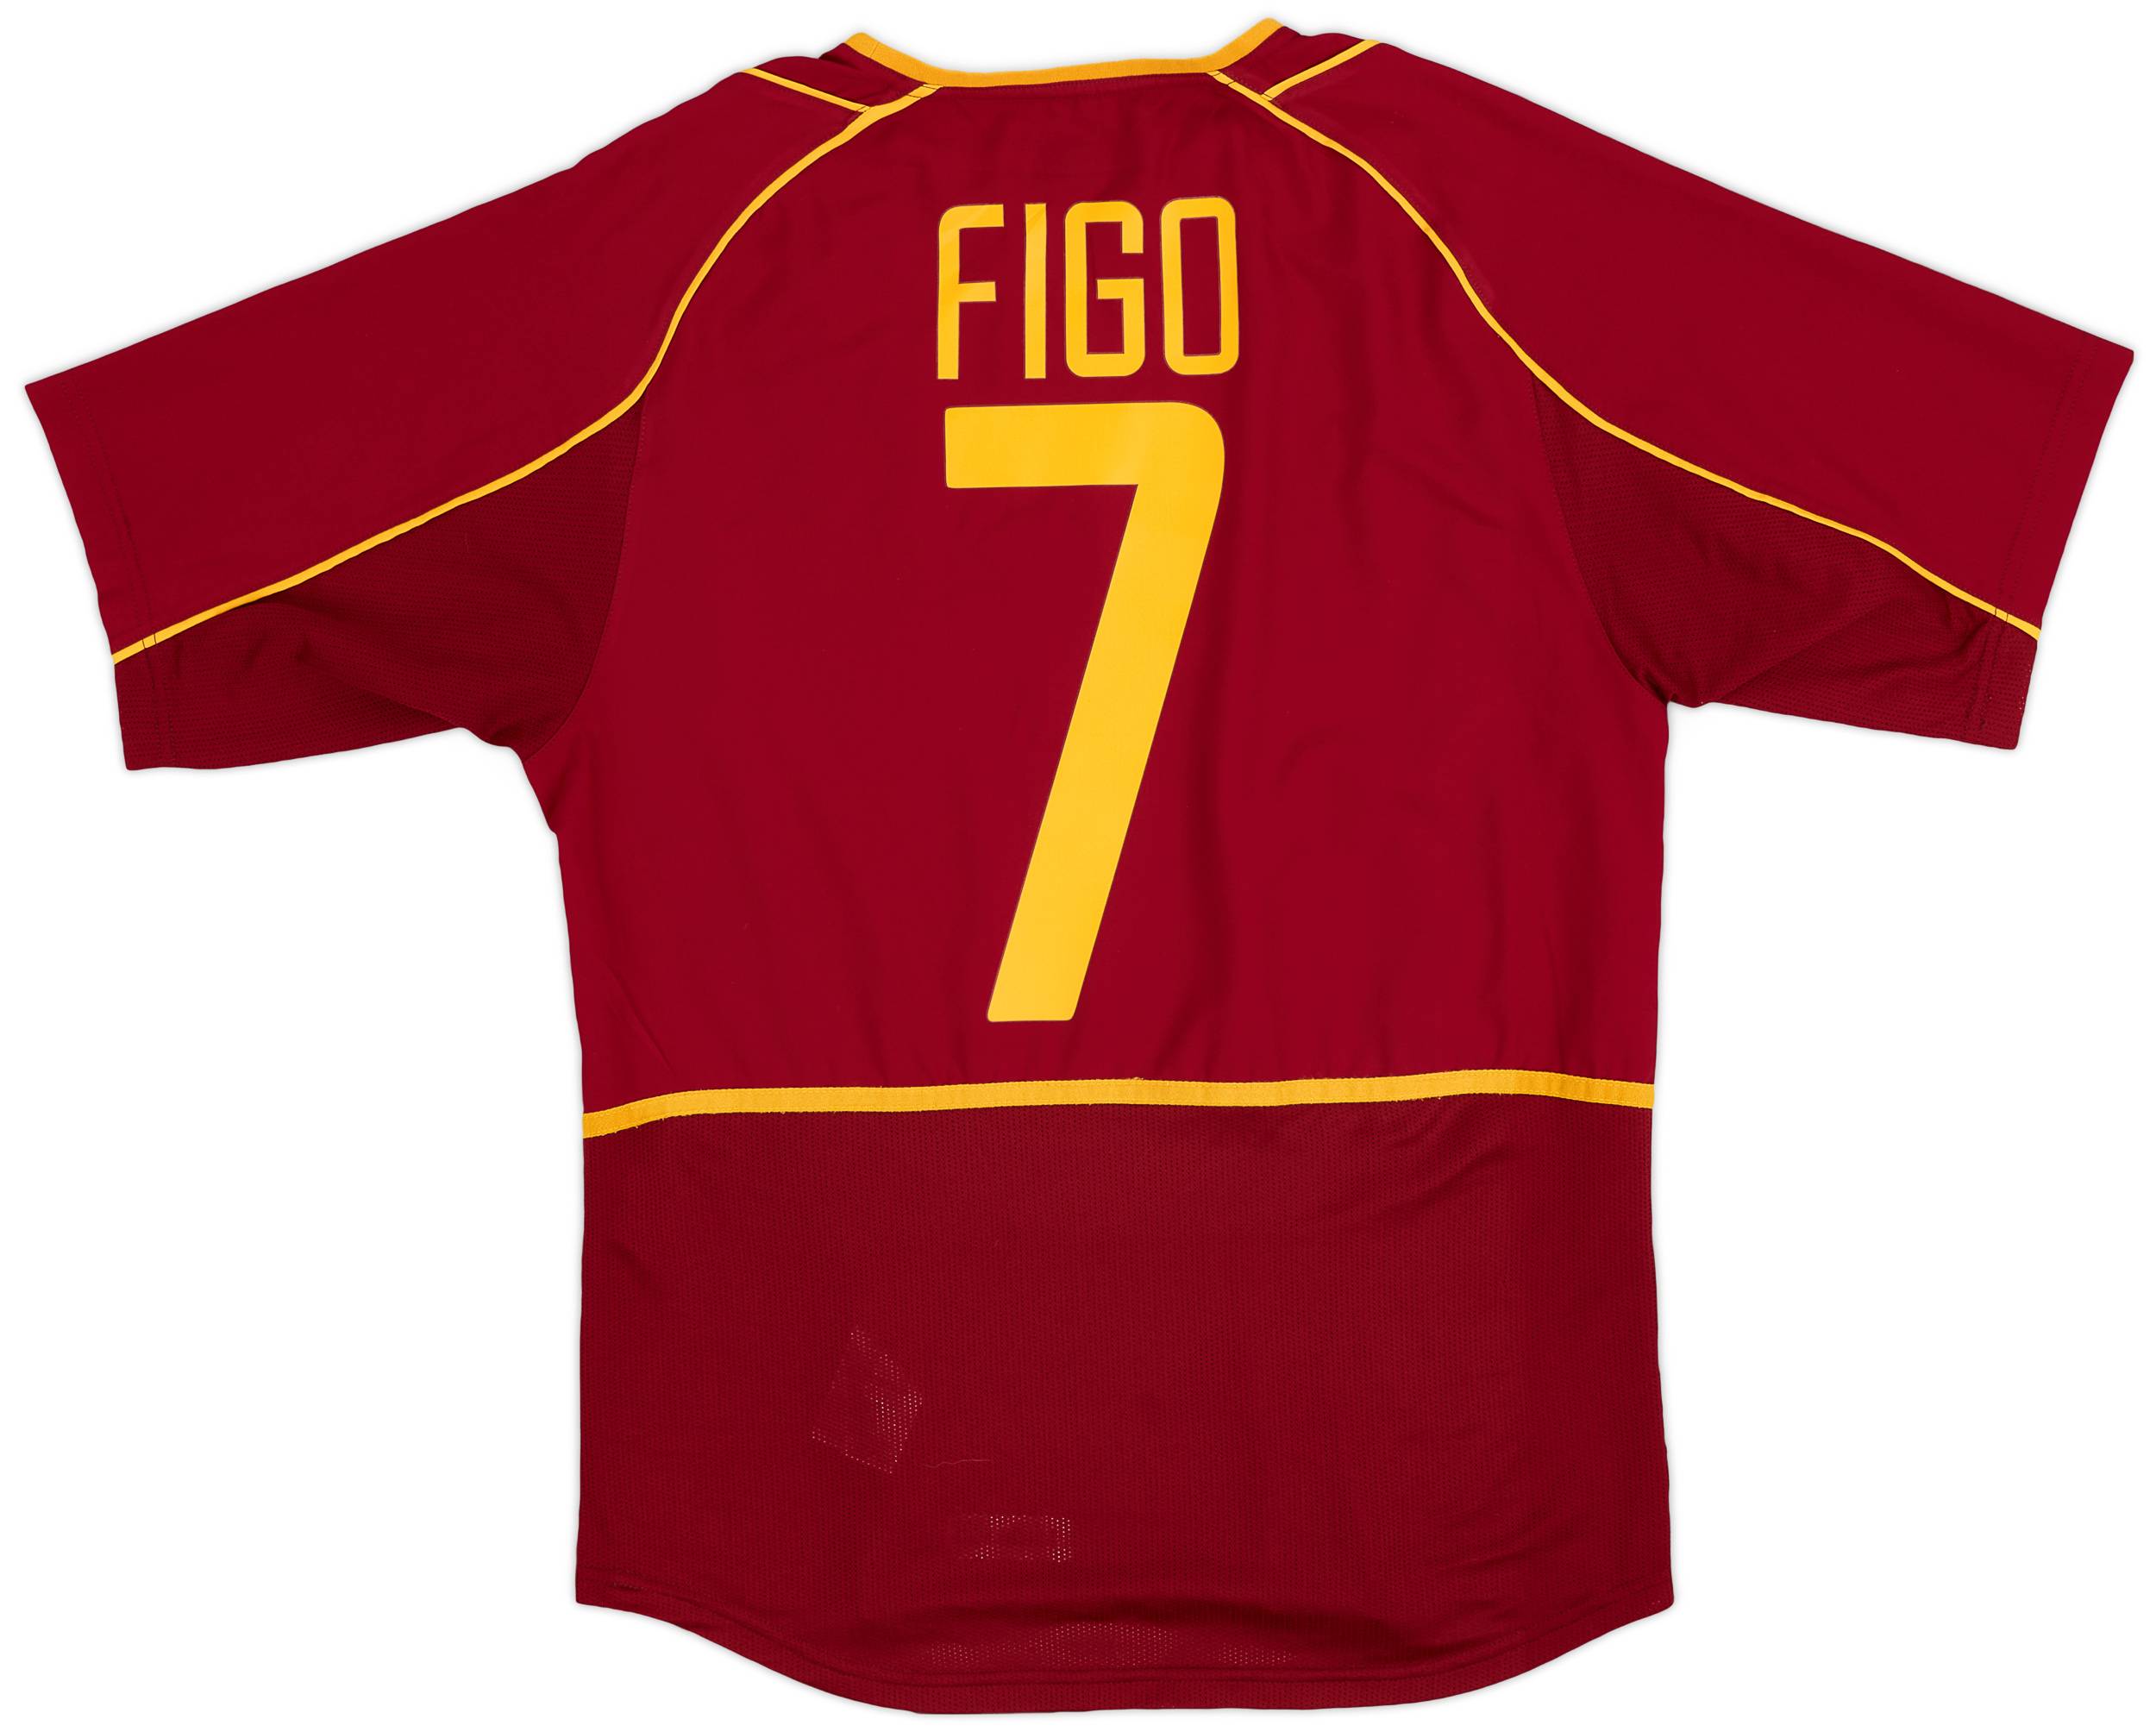 2002-04 Portugal Home Shirt Figo #7 - 8/10 - (S)